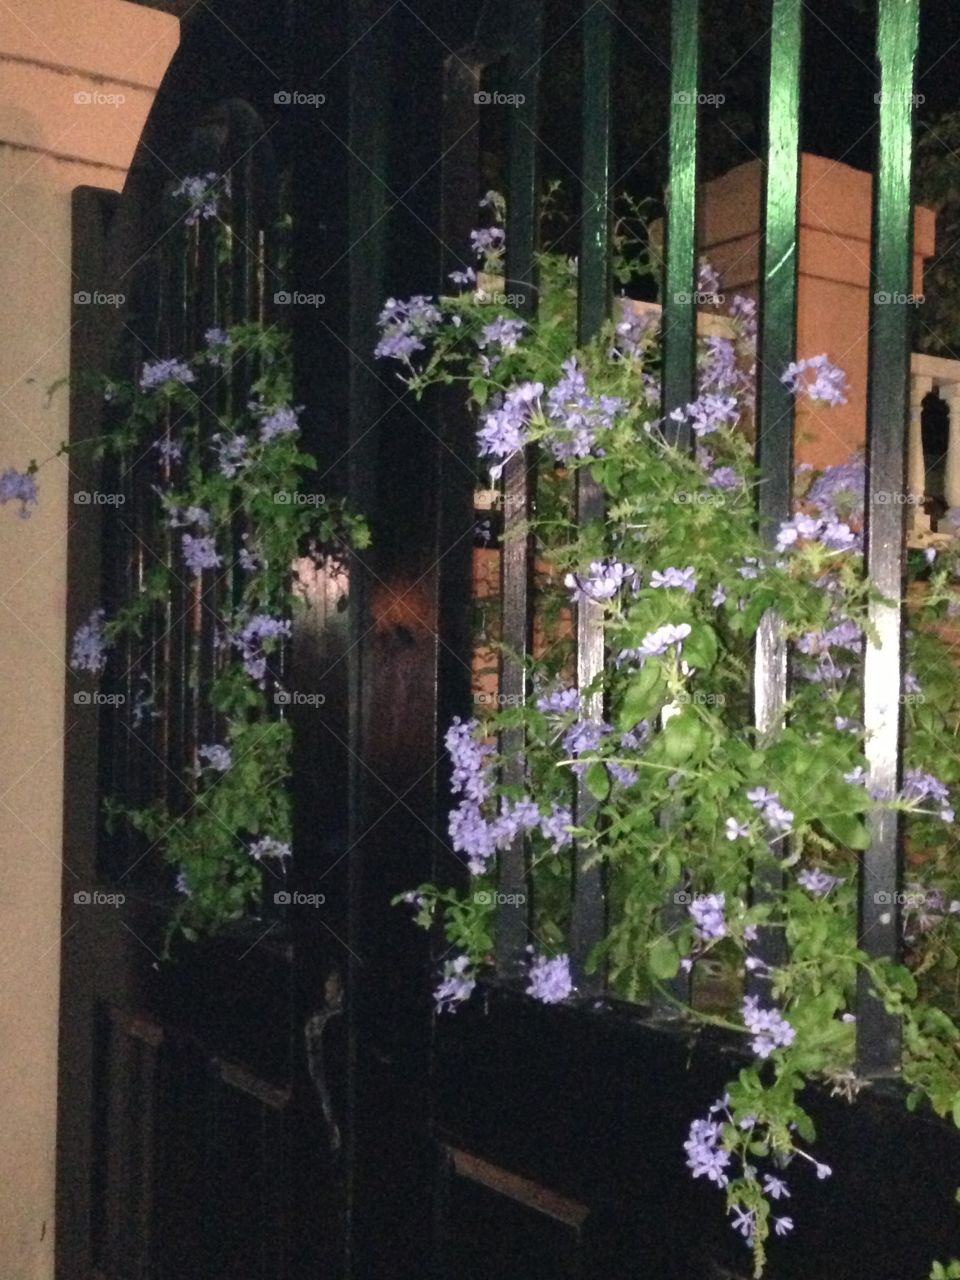 Flowers through a gate